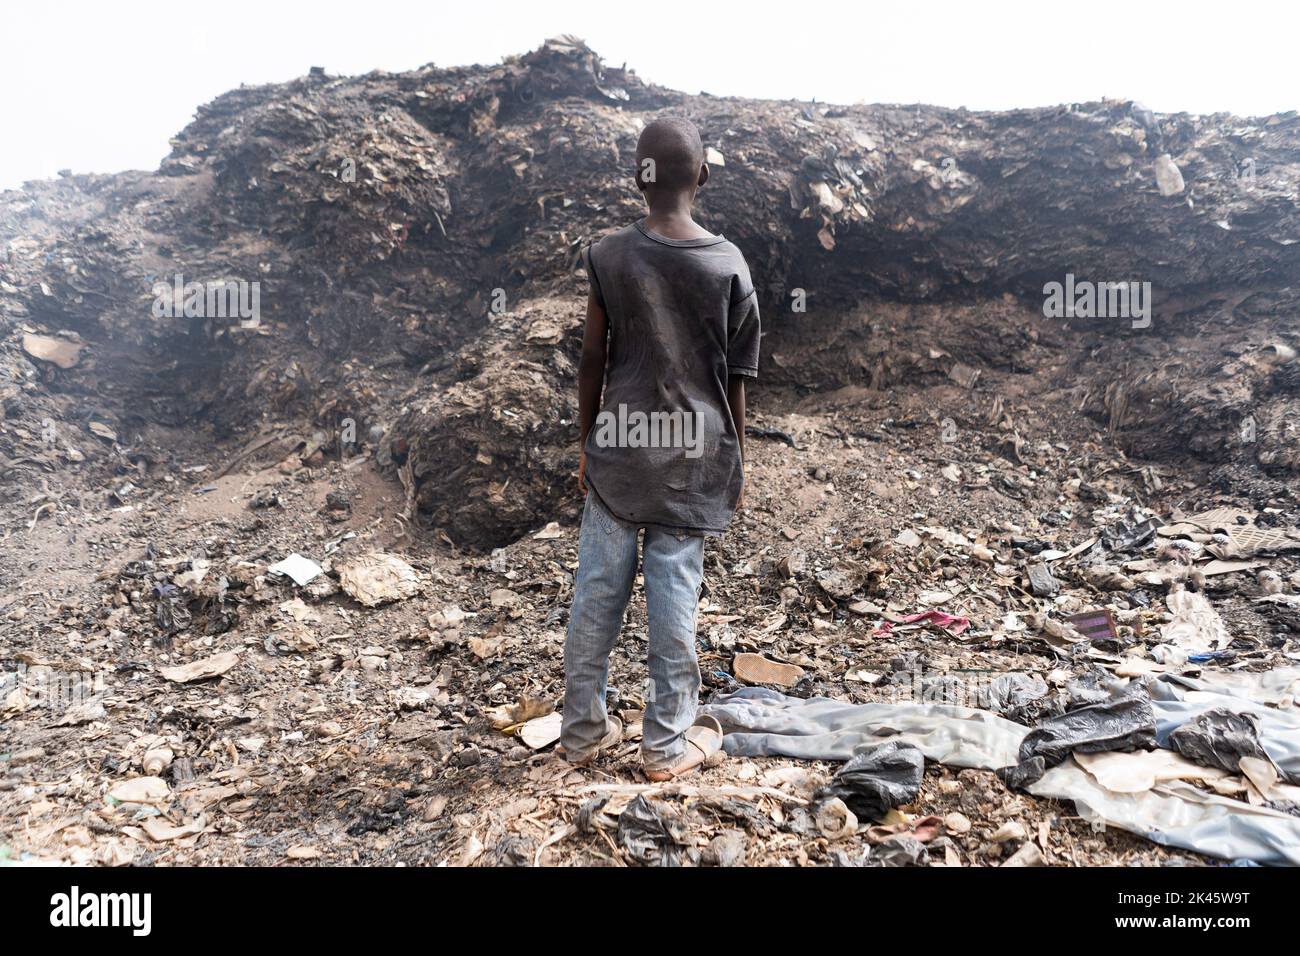 Rückansicht eines jungen afrikanischen Straßenjungen, der in einem städtischen Slum vor einem riesigen Berg rauchenden Mülls steht; Symbol für extreme Armut in den am wenigsten entwickelten Ländern Stockfoto